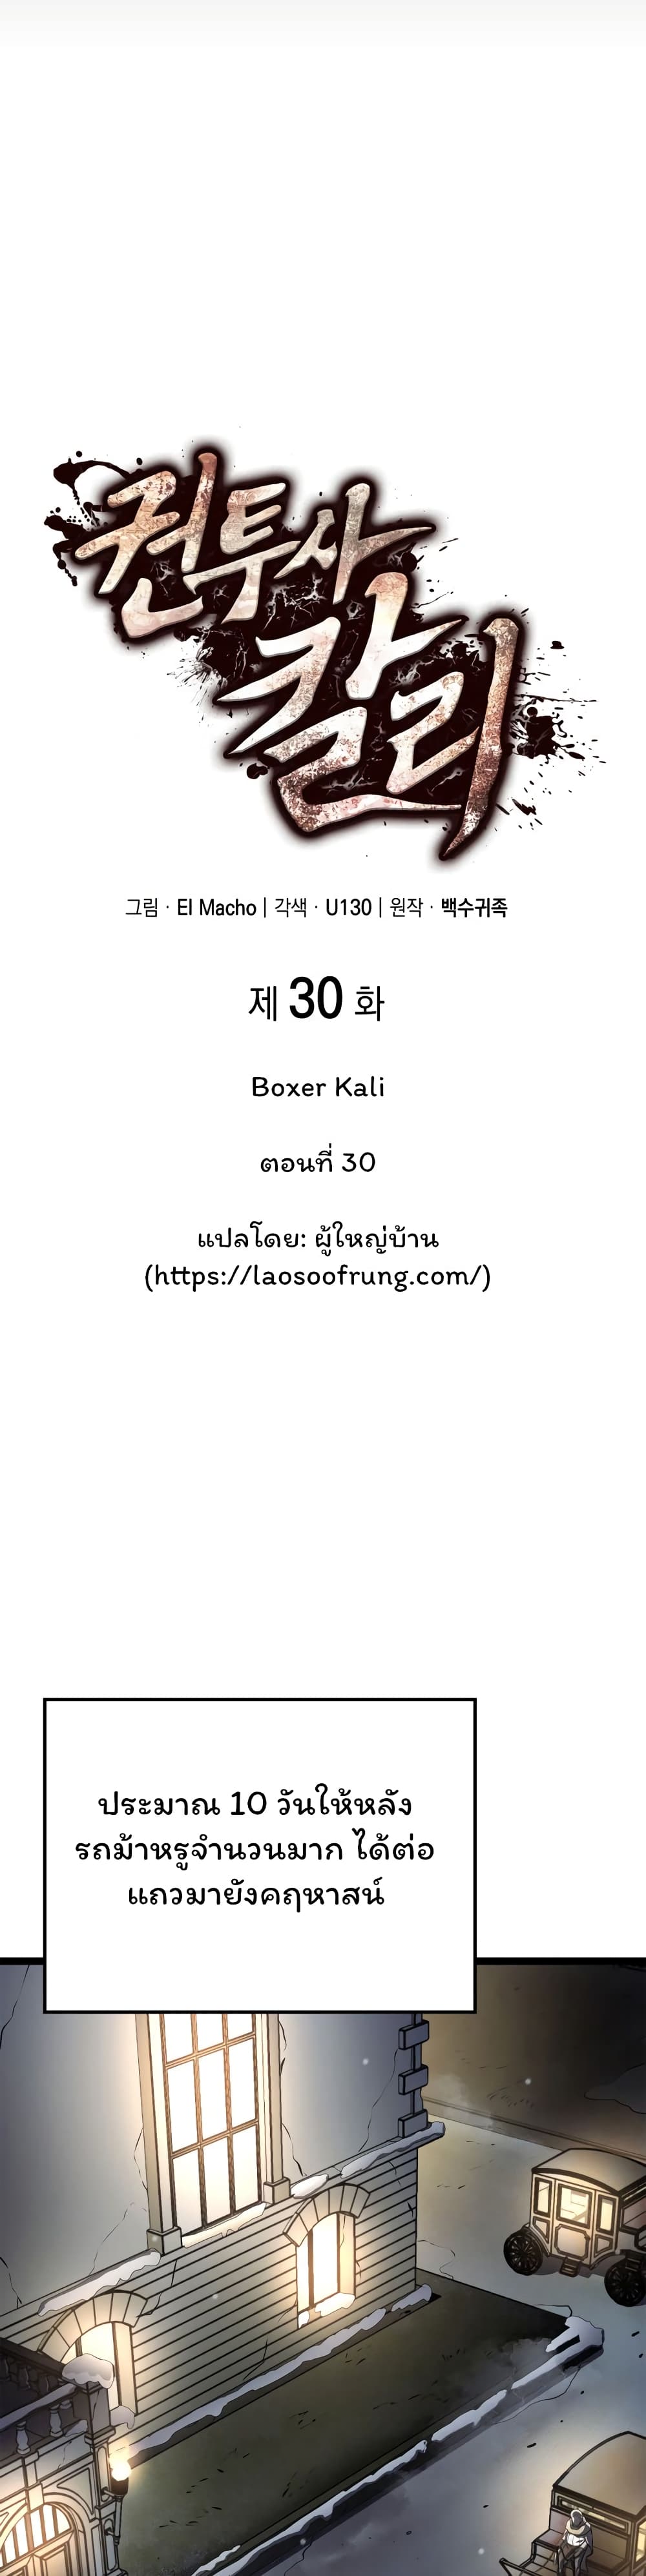 Boxer Kali 30 (6)